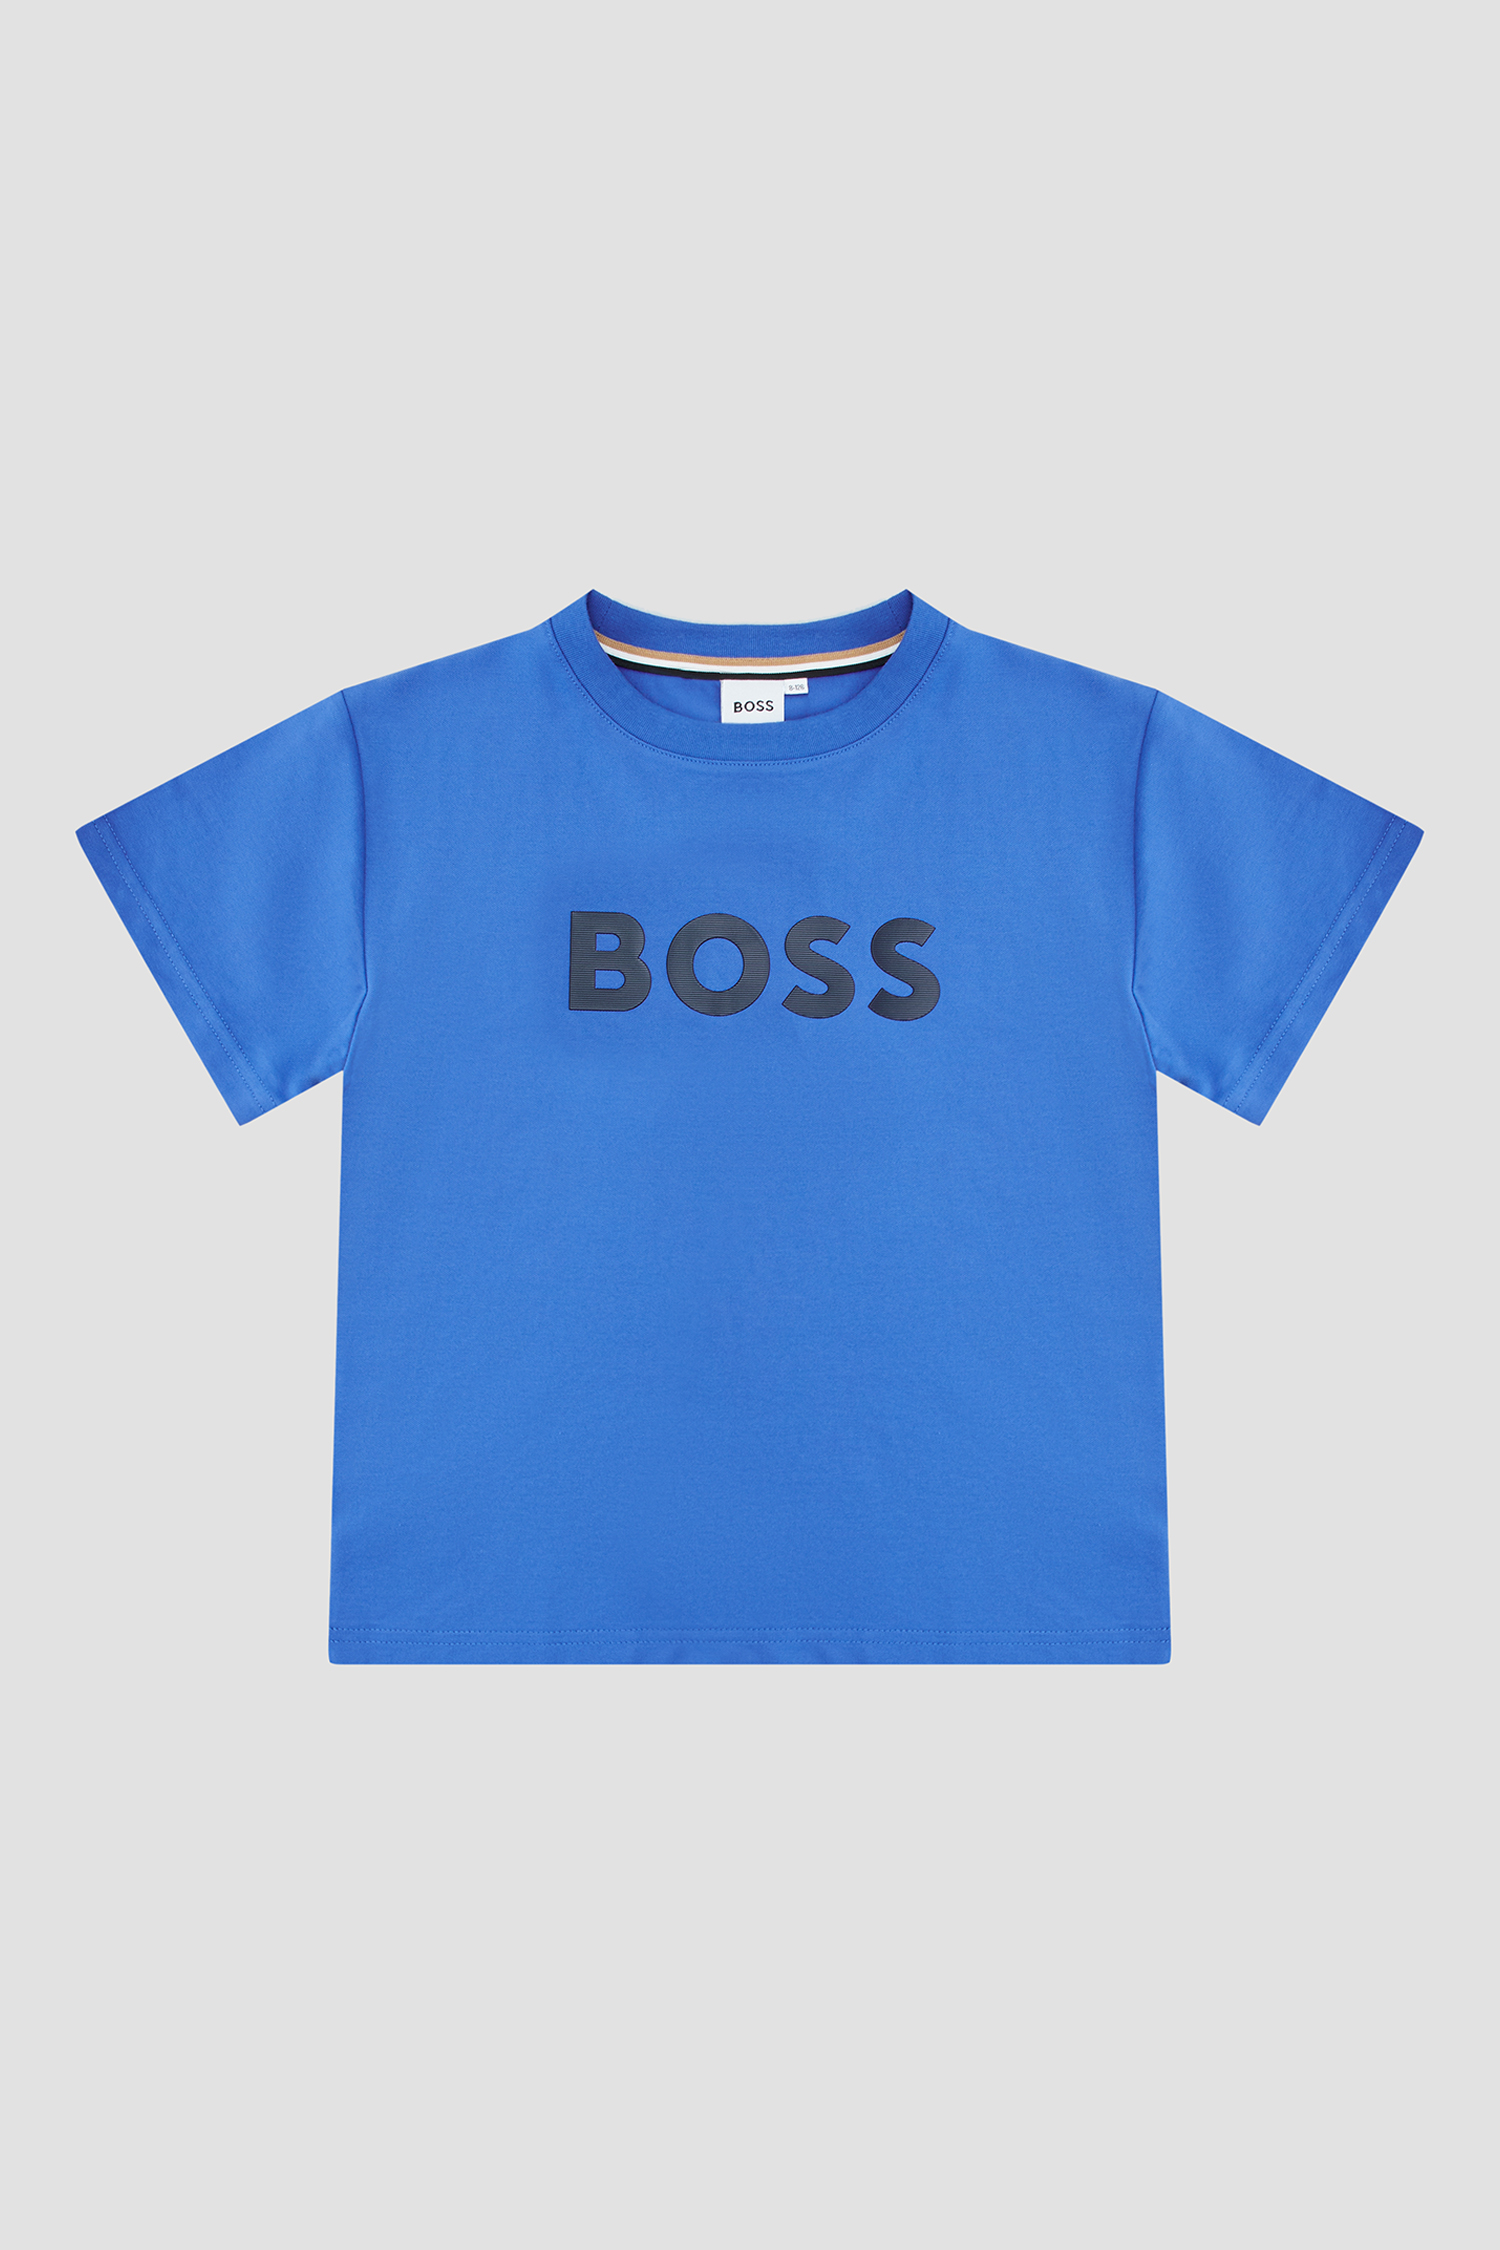 Детская синяя футболка BOSS kids J25O71;846